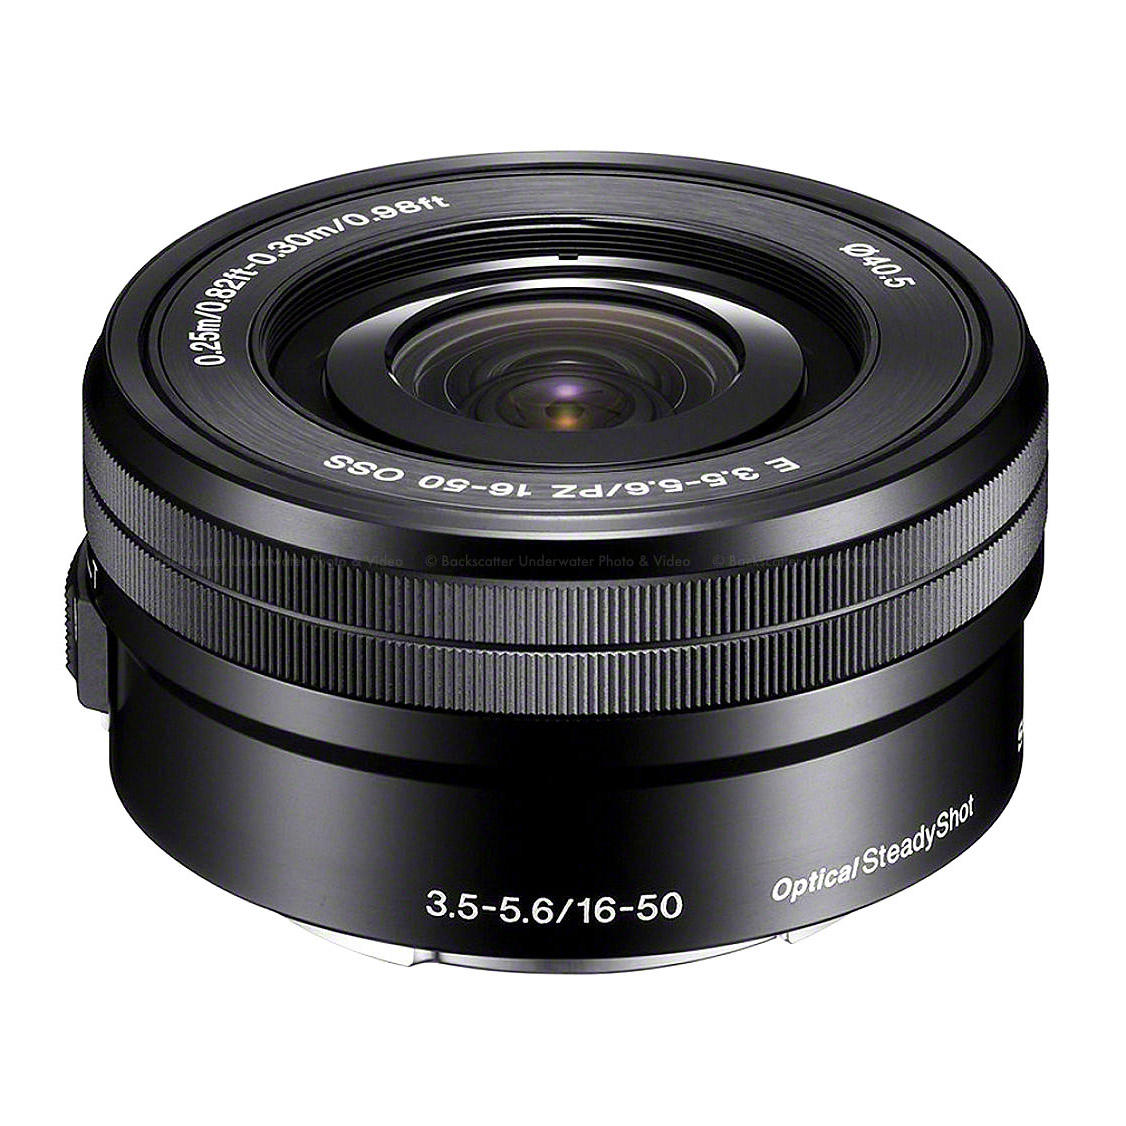 دوربین بدون آینه سونی Sony Alpha a6300 Kit 16-50mm f/3.5-5.6 OSS